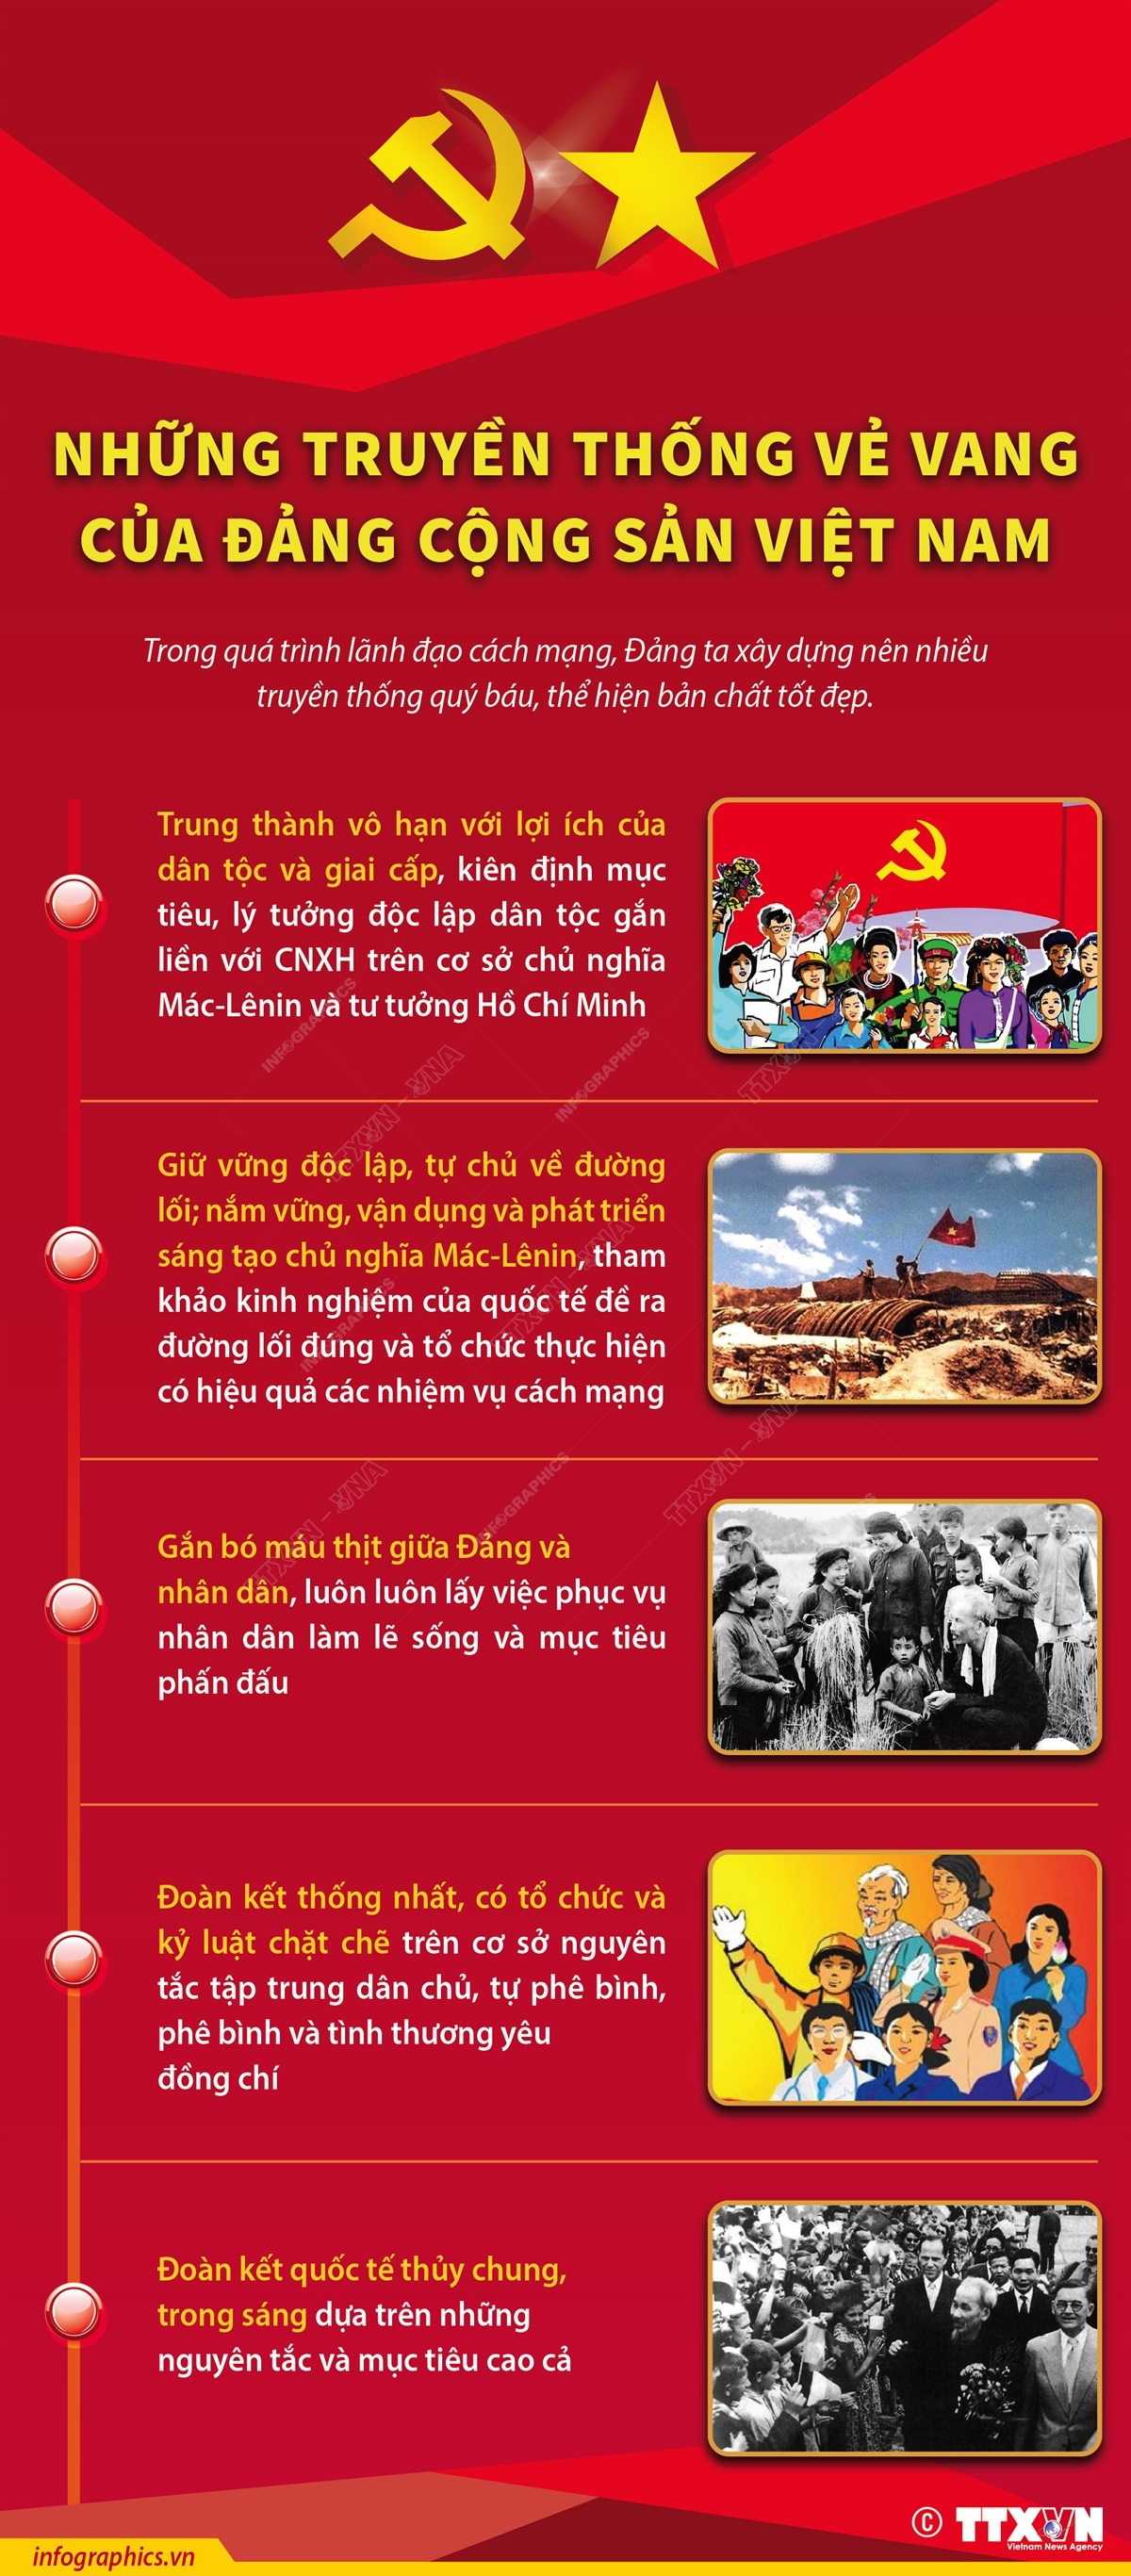 [Infographic] Những truyền thống vẻ vang của Đảng Cộng sản Việt Nam - Ảnh 1.